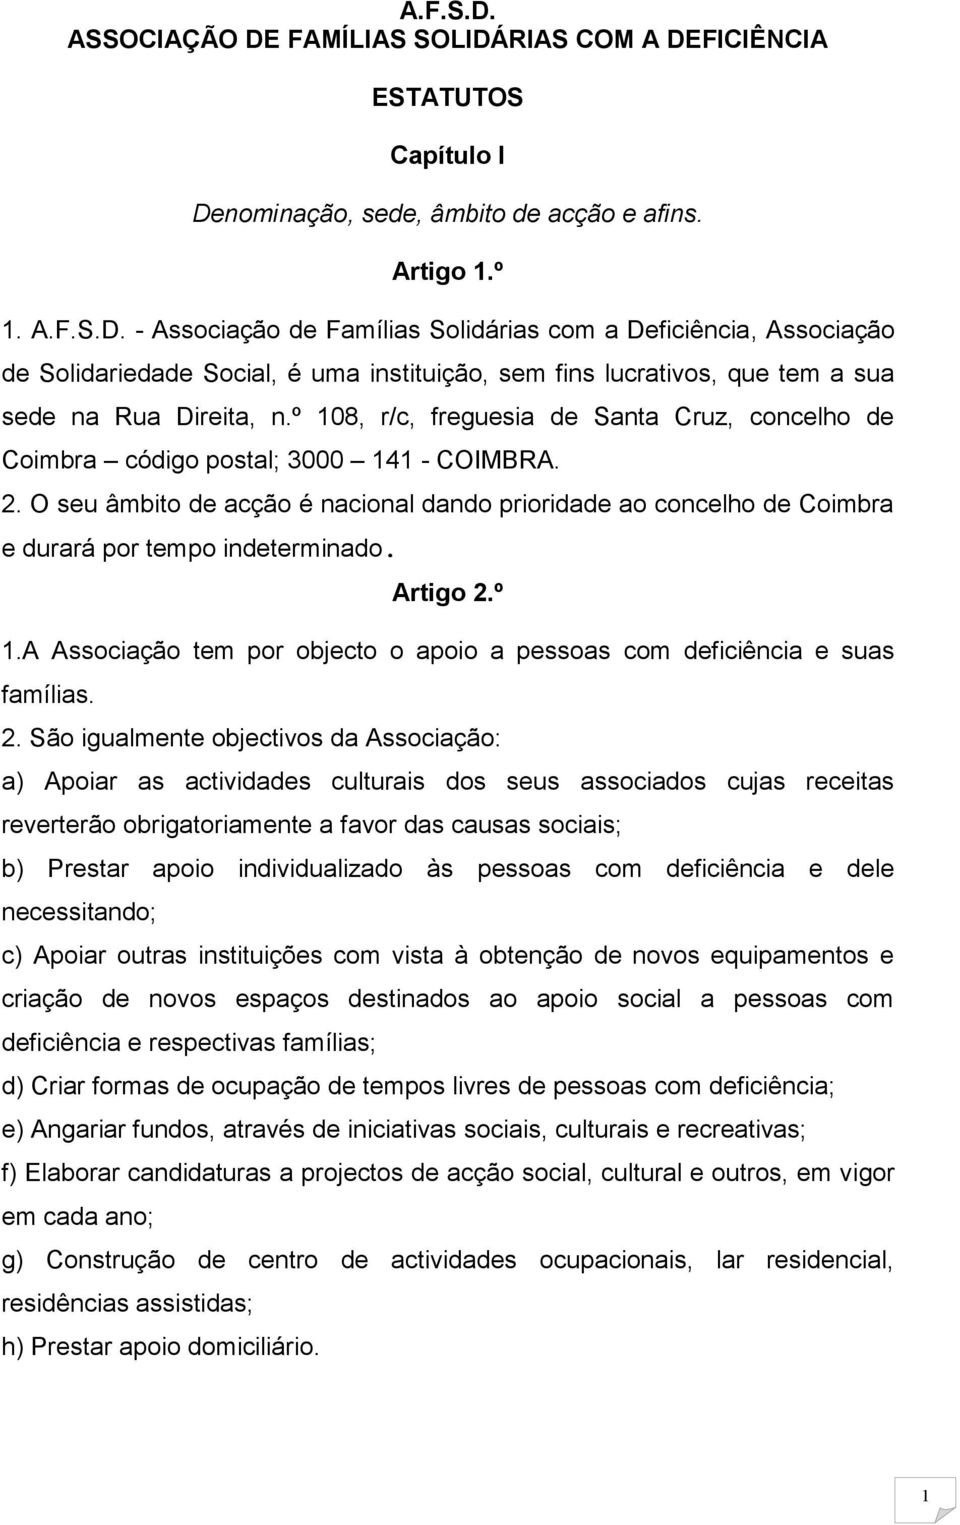 O seu âmbito de acção é nacional dando prioridade ao concelho de Coimbra e durará por tempo indeterminado. Artigo 2.º 1.A Associação tem por objecto o apoio a pessoas com deficiência e suas famílias.